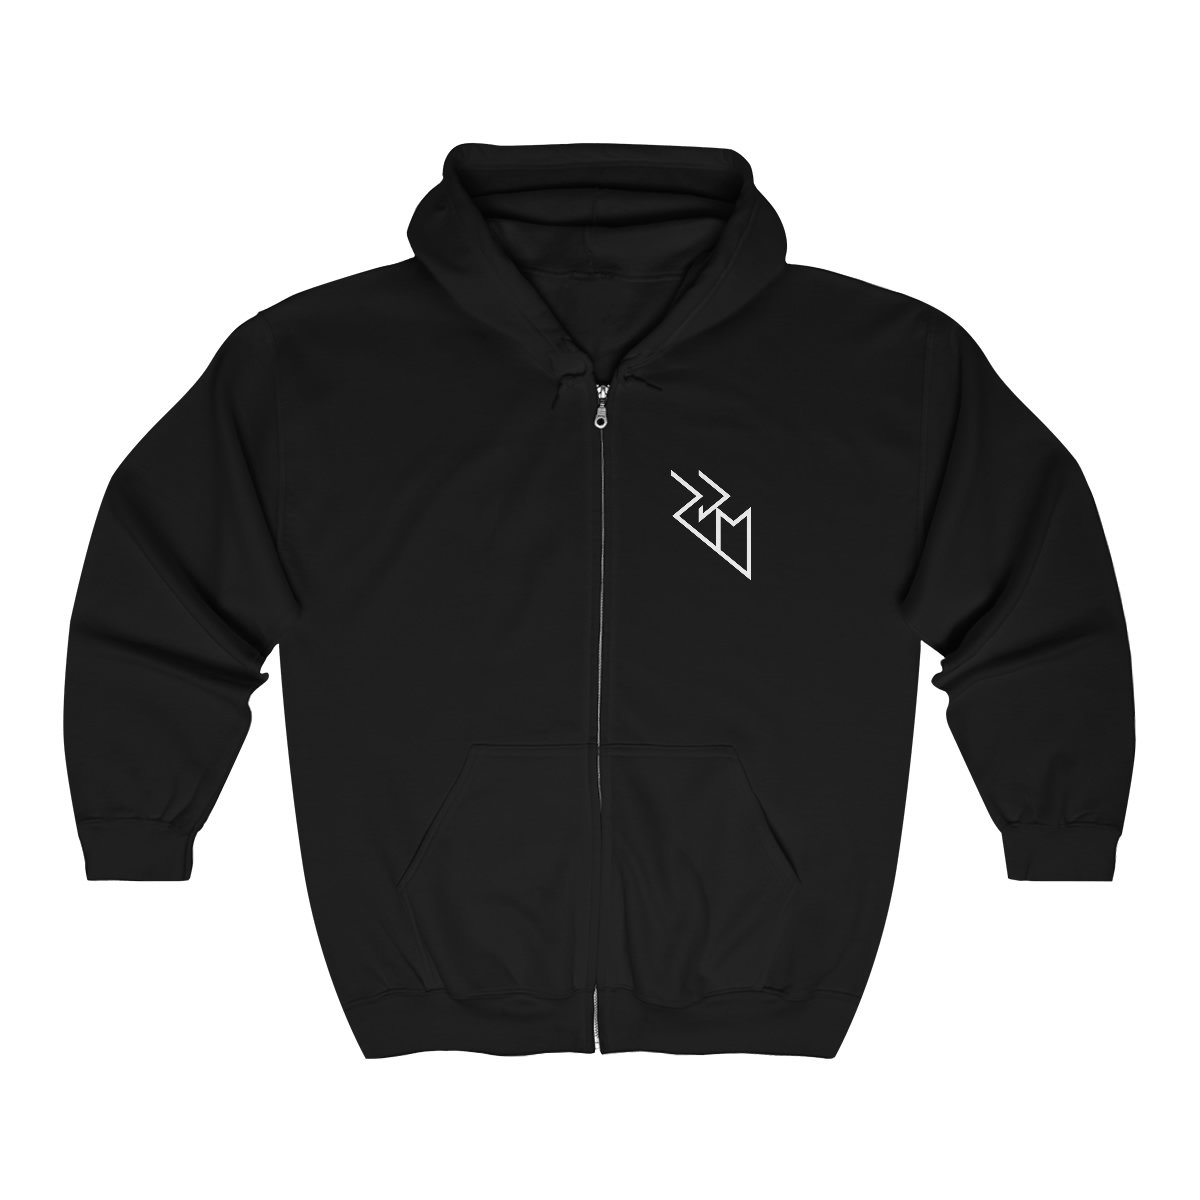 Roger Dale Martin – Vengeance Rising Logo Full Zip Hooded Sweatshirt